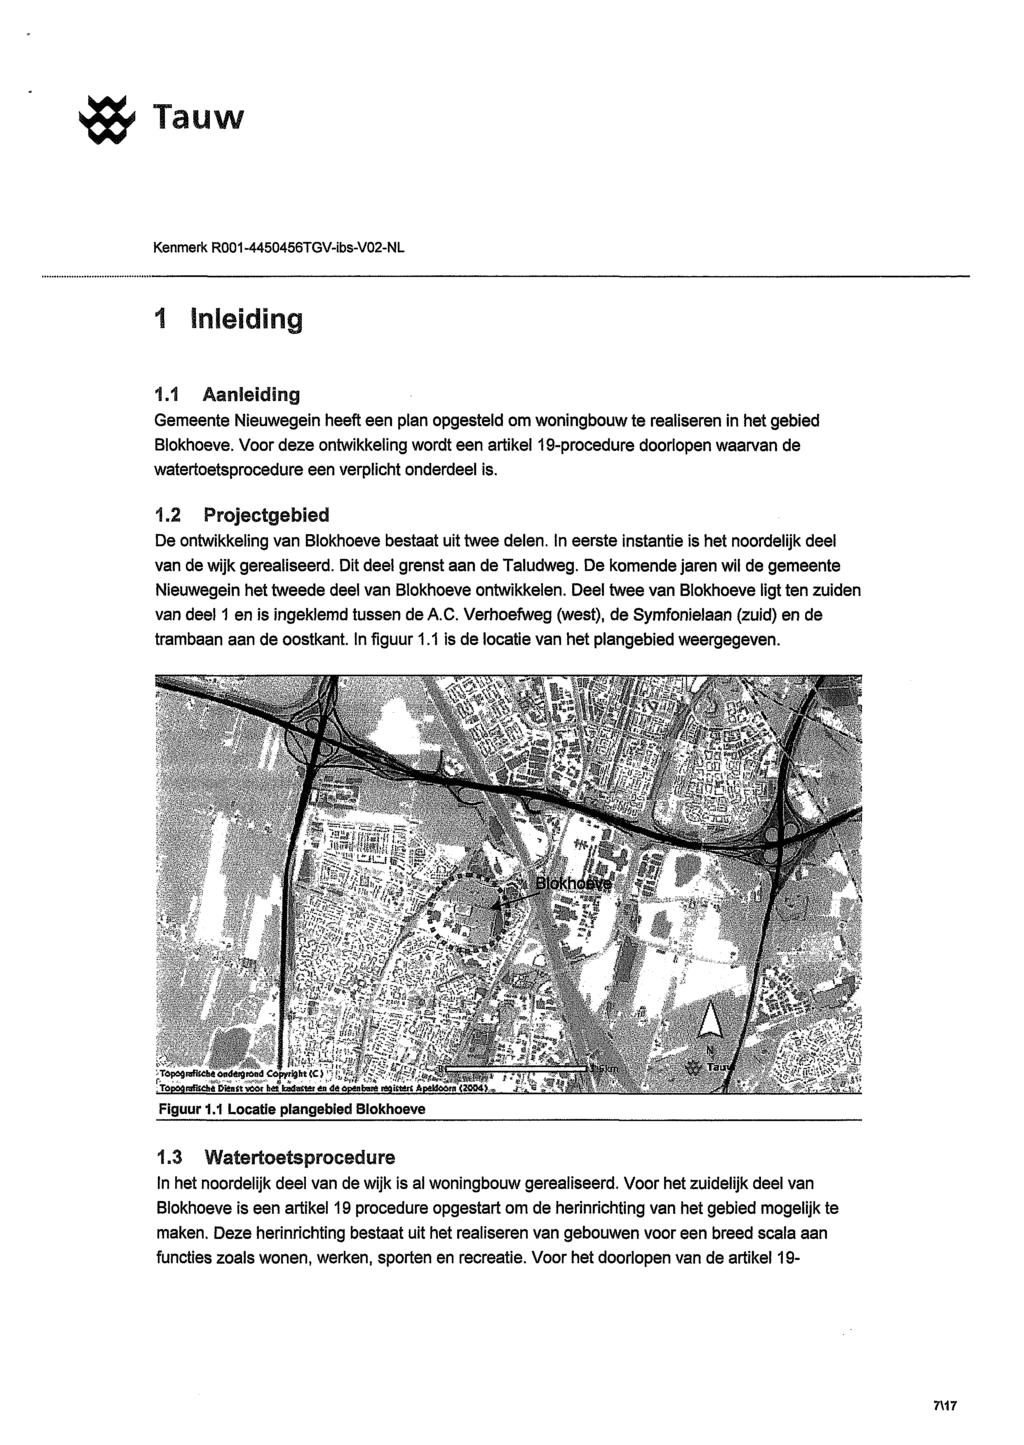 Tauw Kenmerk R001-4450456TGV-ibs-V02-NL 1 Inleiding 1.1 Aanfeidfng Gemeente Nieuwegein heeft een plan opgesteld om woningbouw te realiseren in het gebied Blokhoeve.